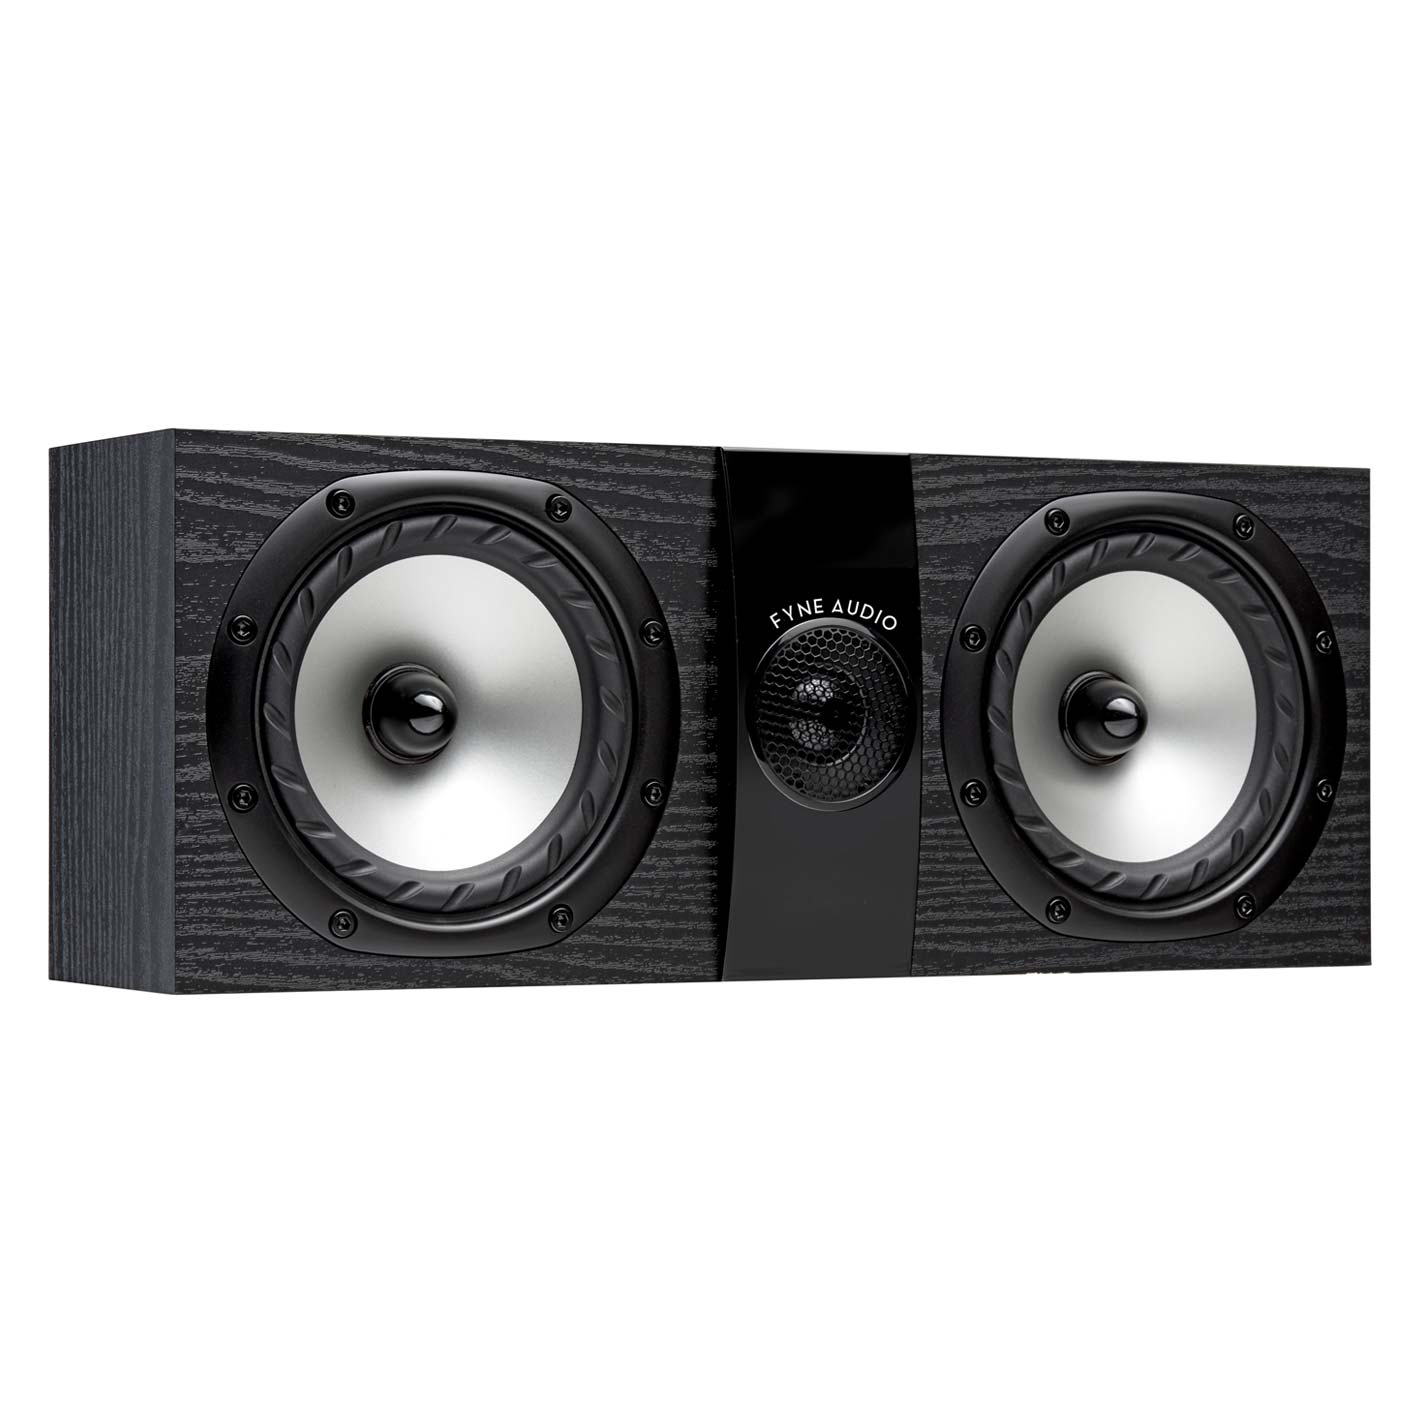 Настенная акустика Fyne Audio F300 LCR Black Ash настенная акустика fyne audio f300 lcr walnut